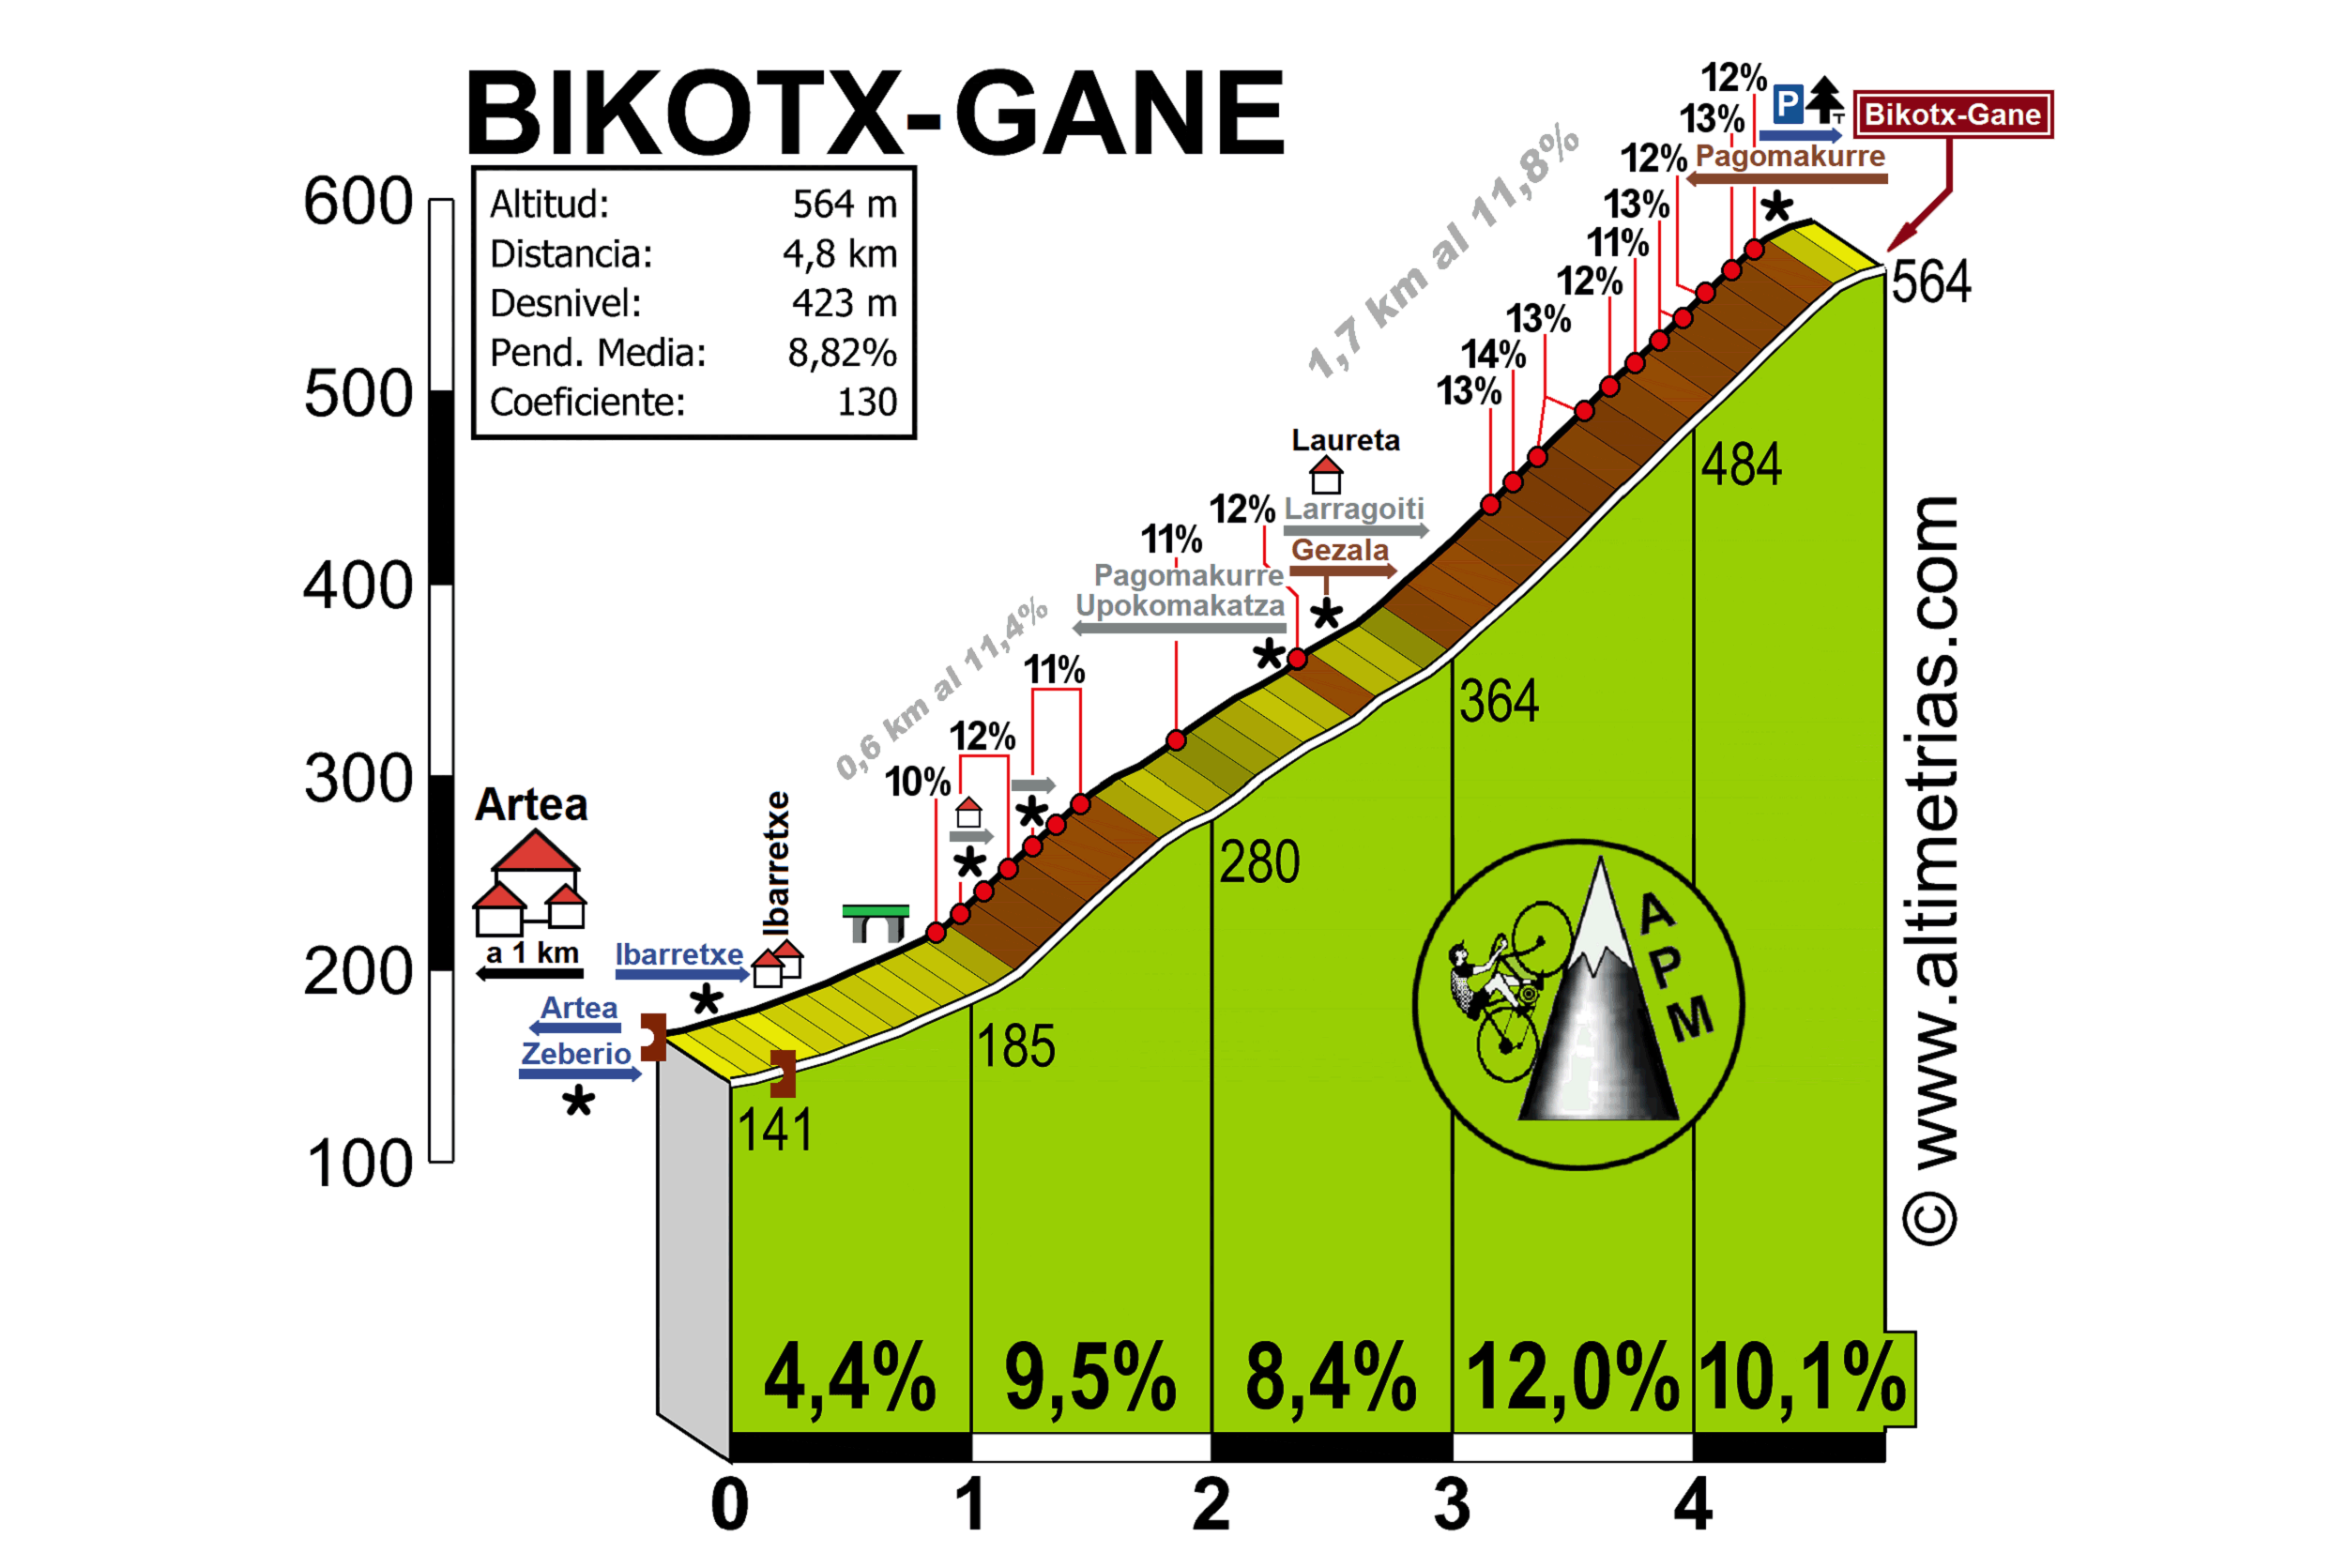 Bikotx-Gane